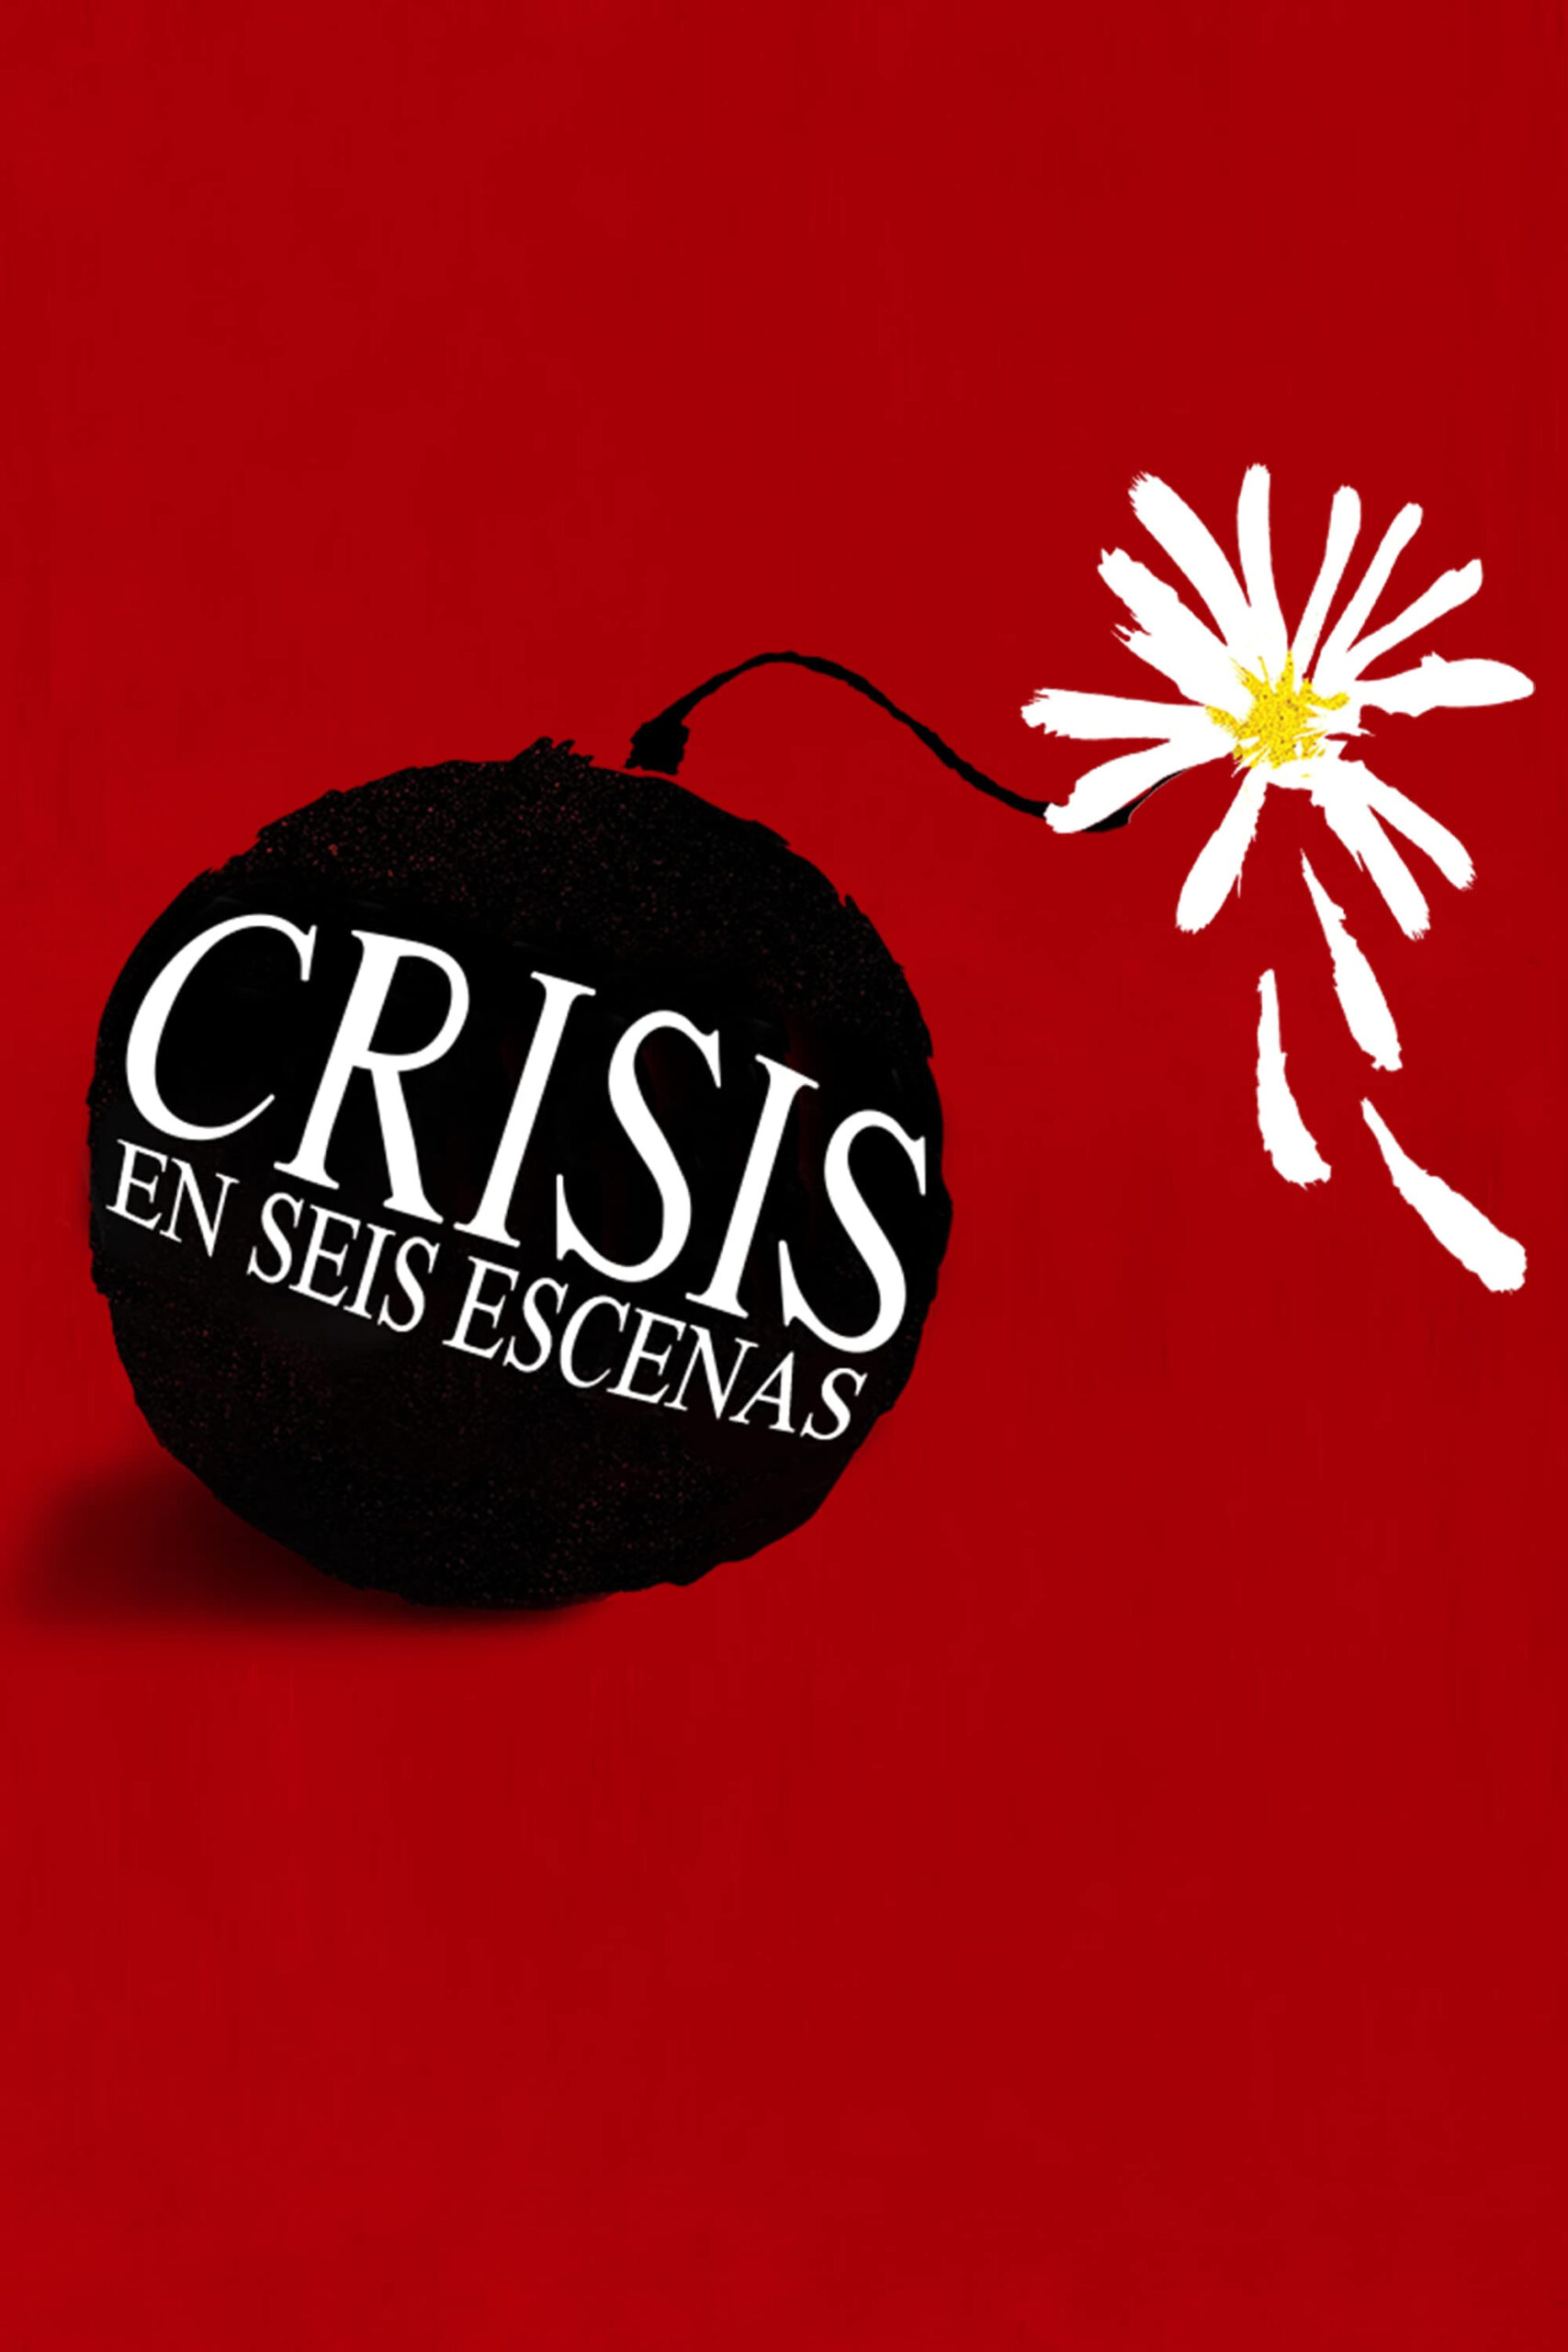 بحران در شش صحنه (Crisis in Six Scenes)